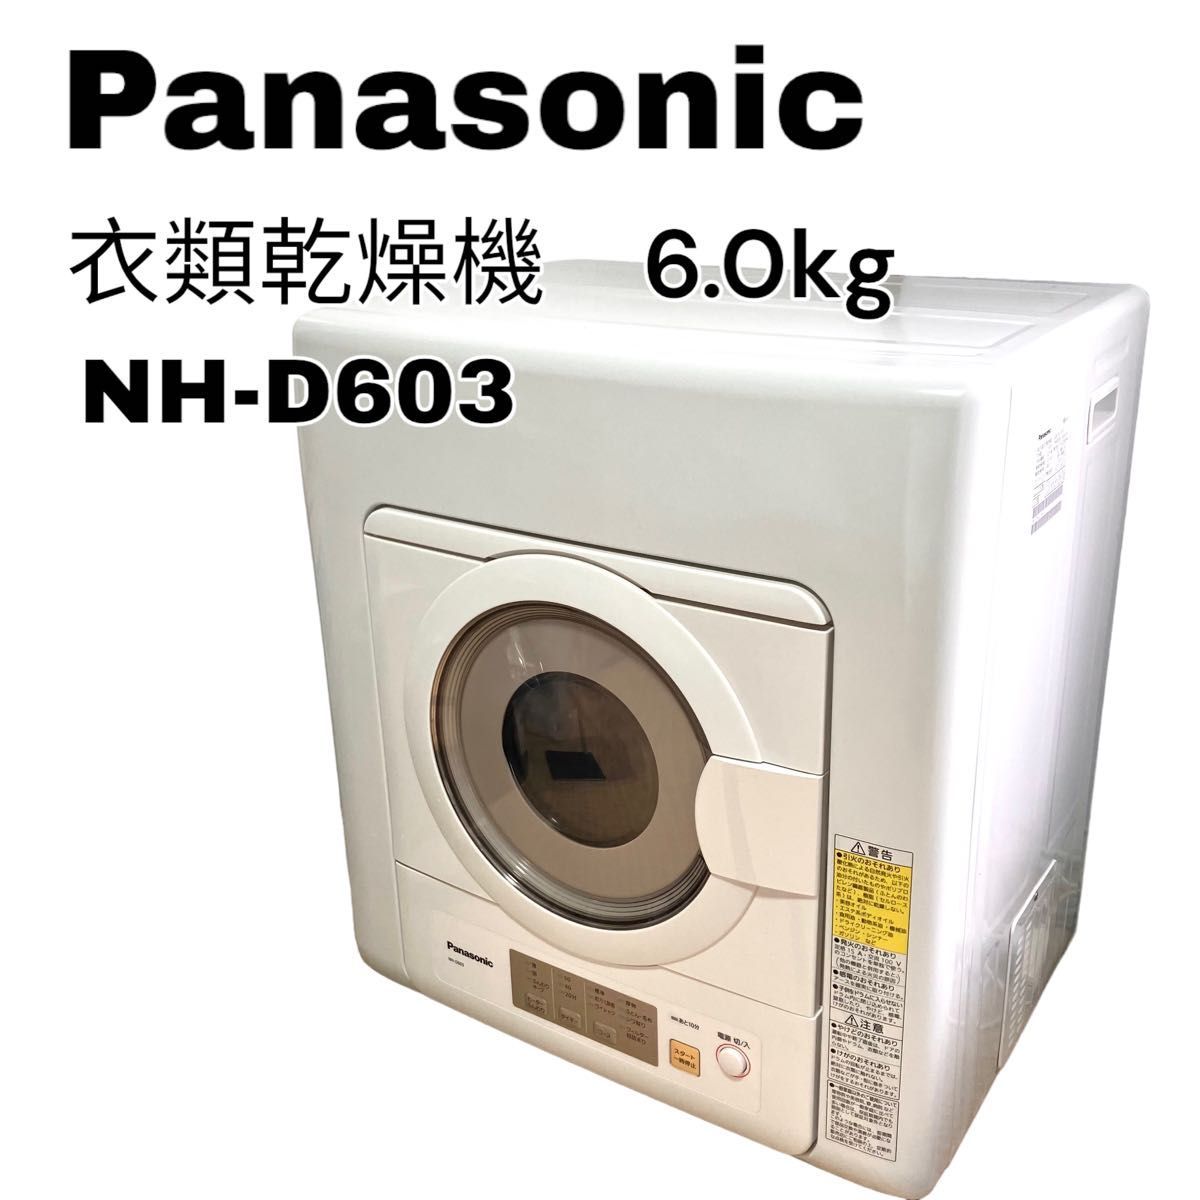 パナソニック 6.0kg 電気衣類乾燥機 ホワイト NH-D603-W Panasonic